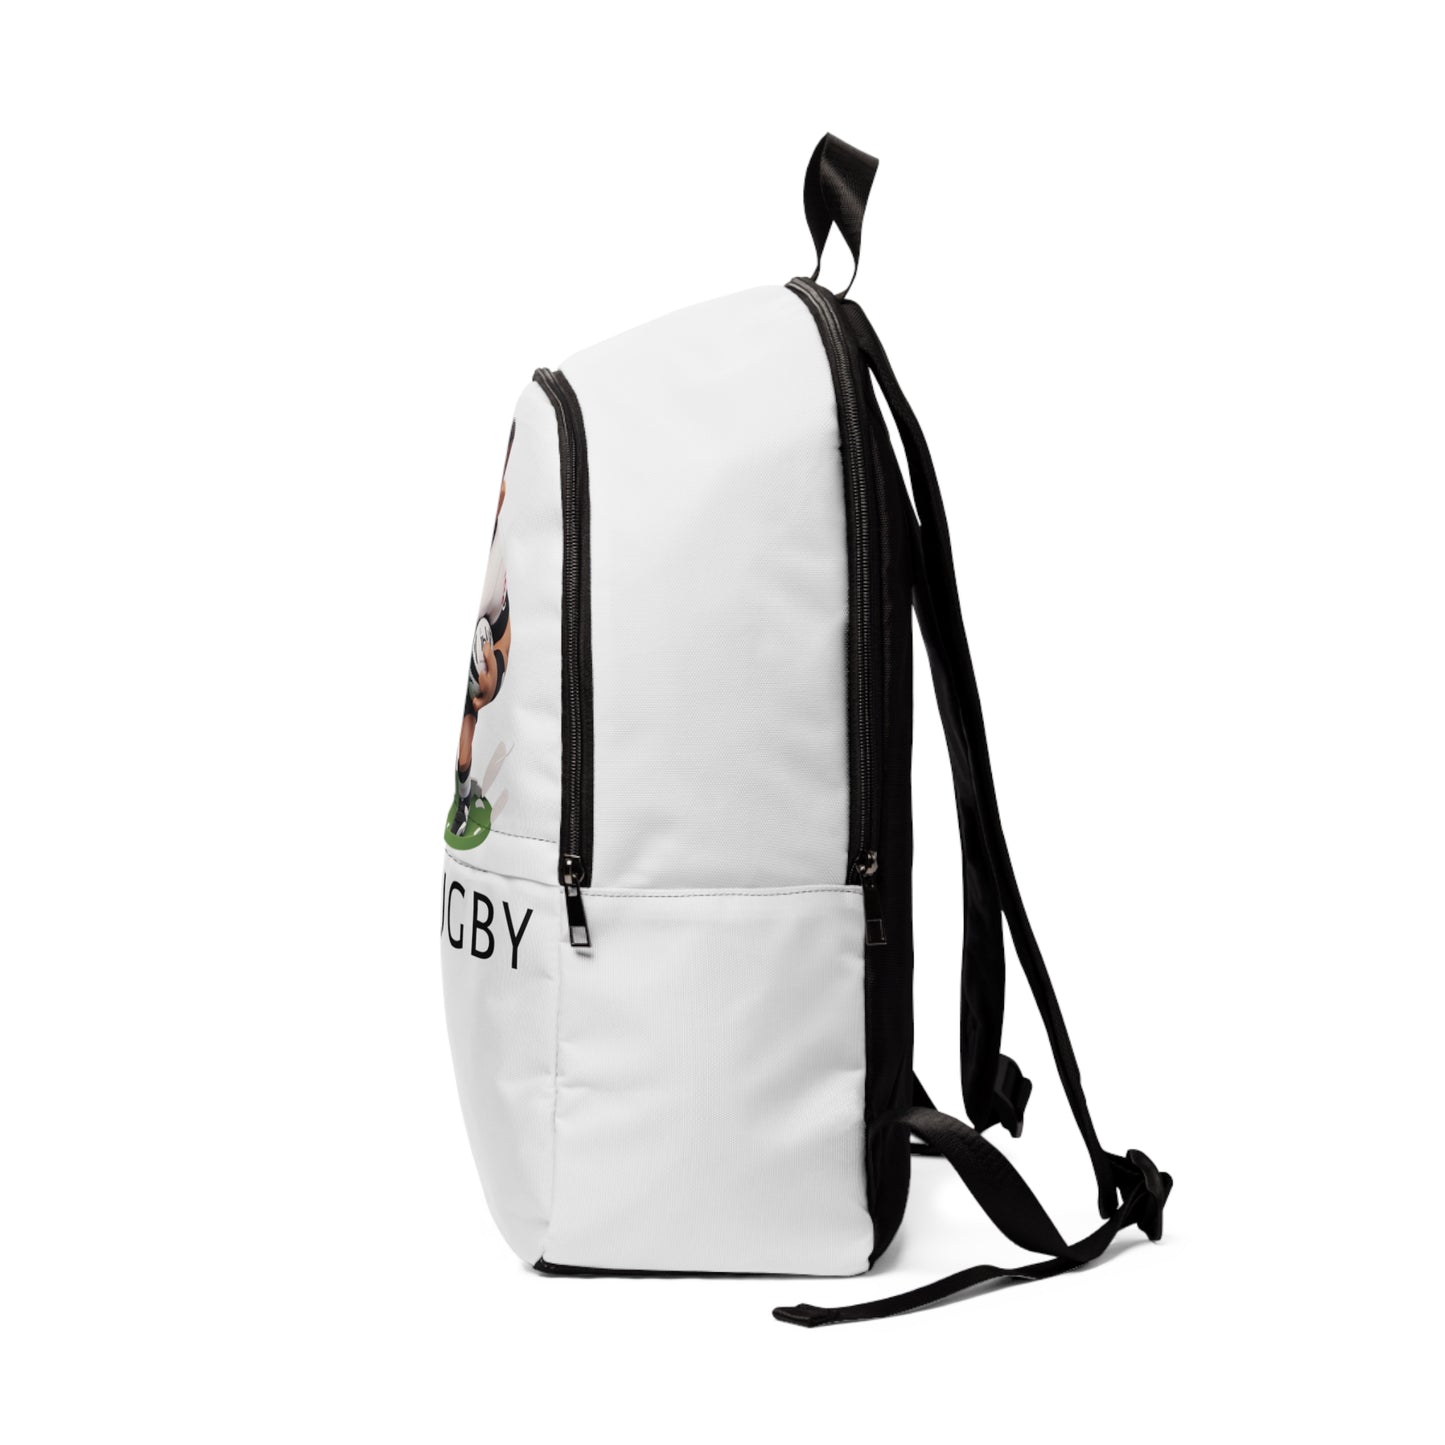 Fiji backpack